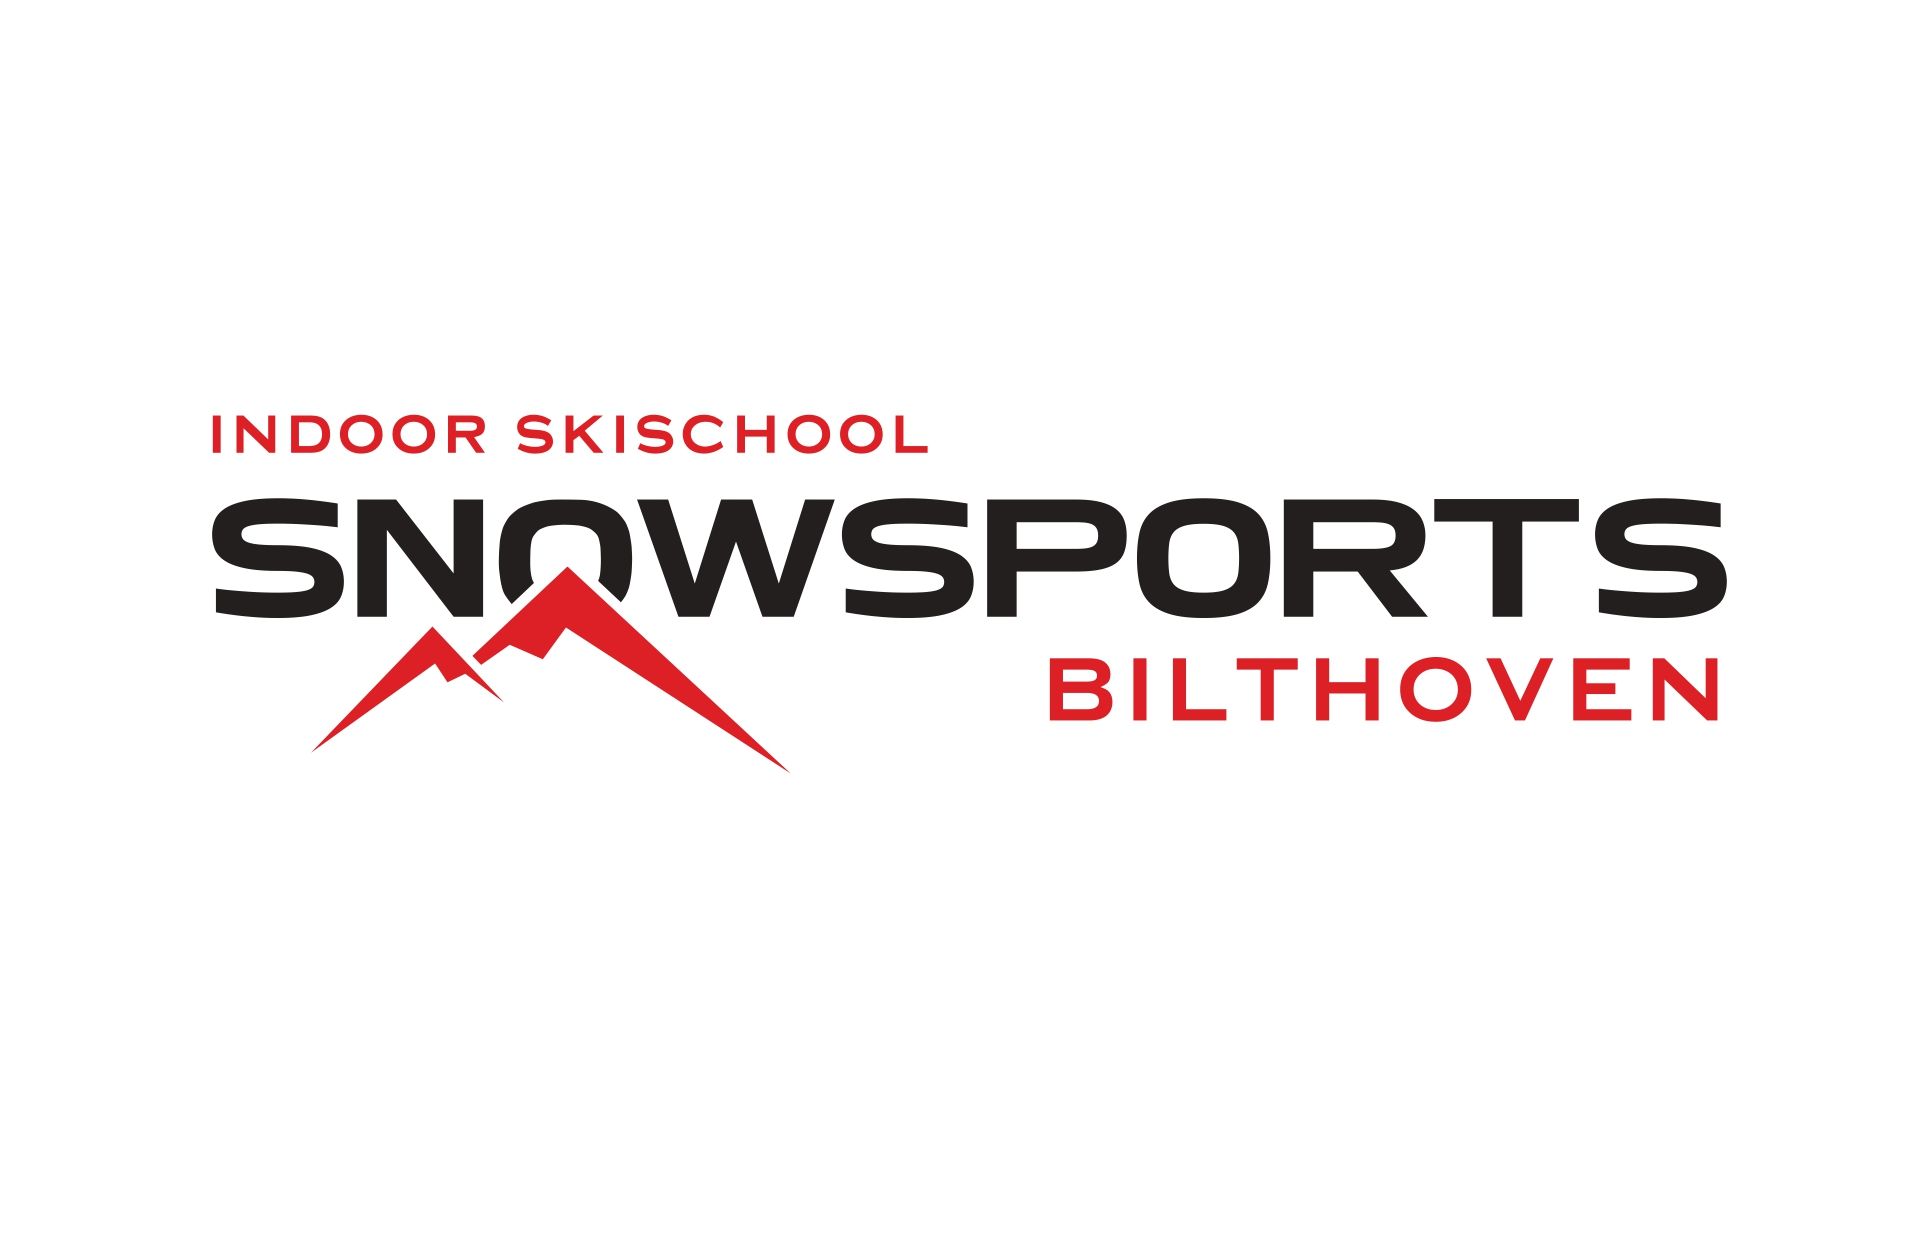 Snowsports Westendorf